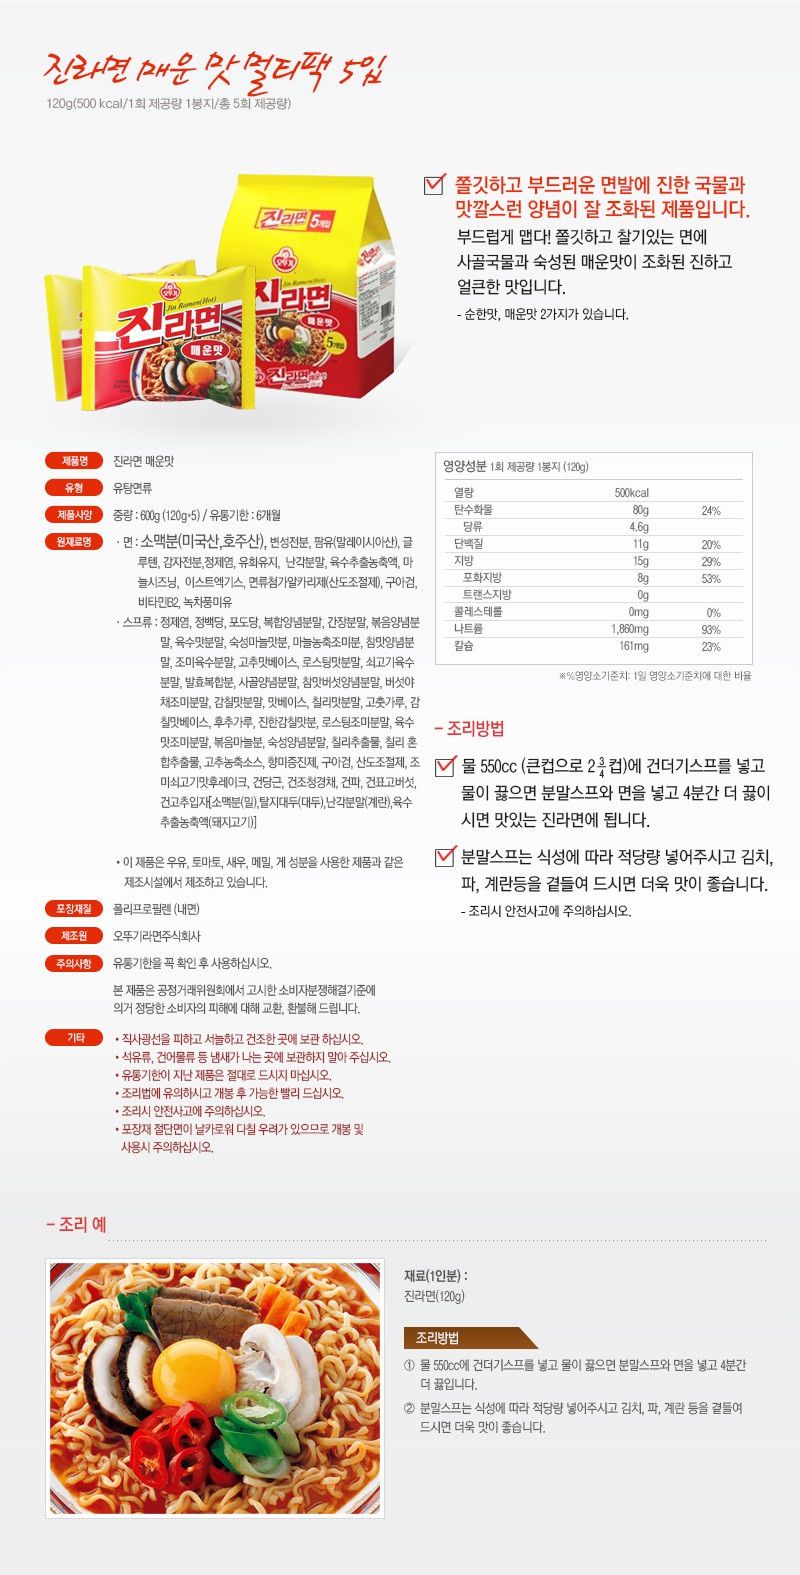 韓國食品-[Ottogi] Jin Instant Noodle[Hot] 120g*5p